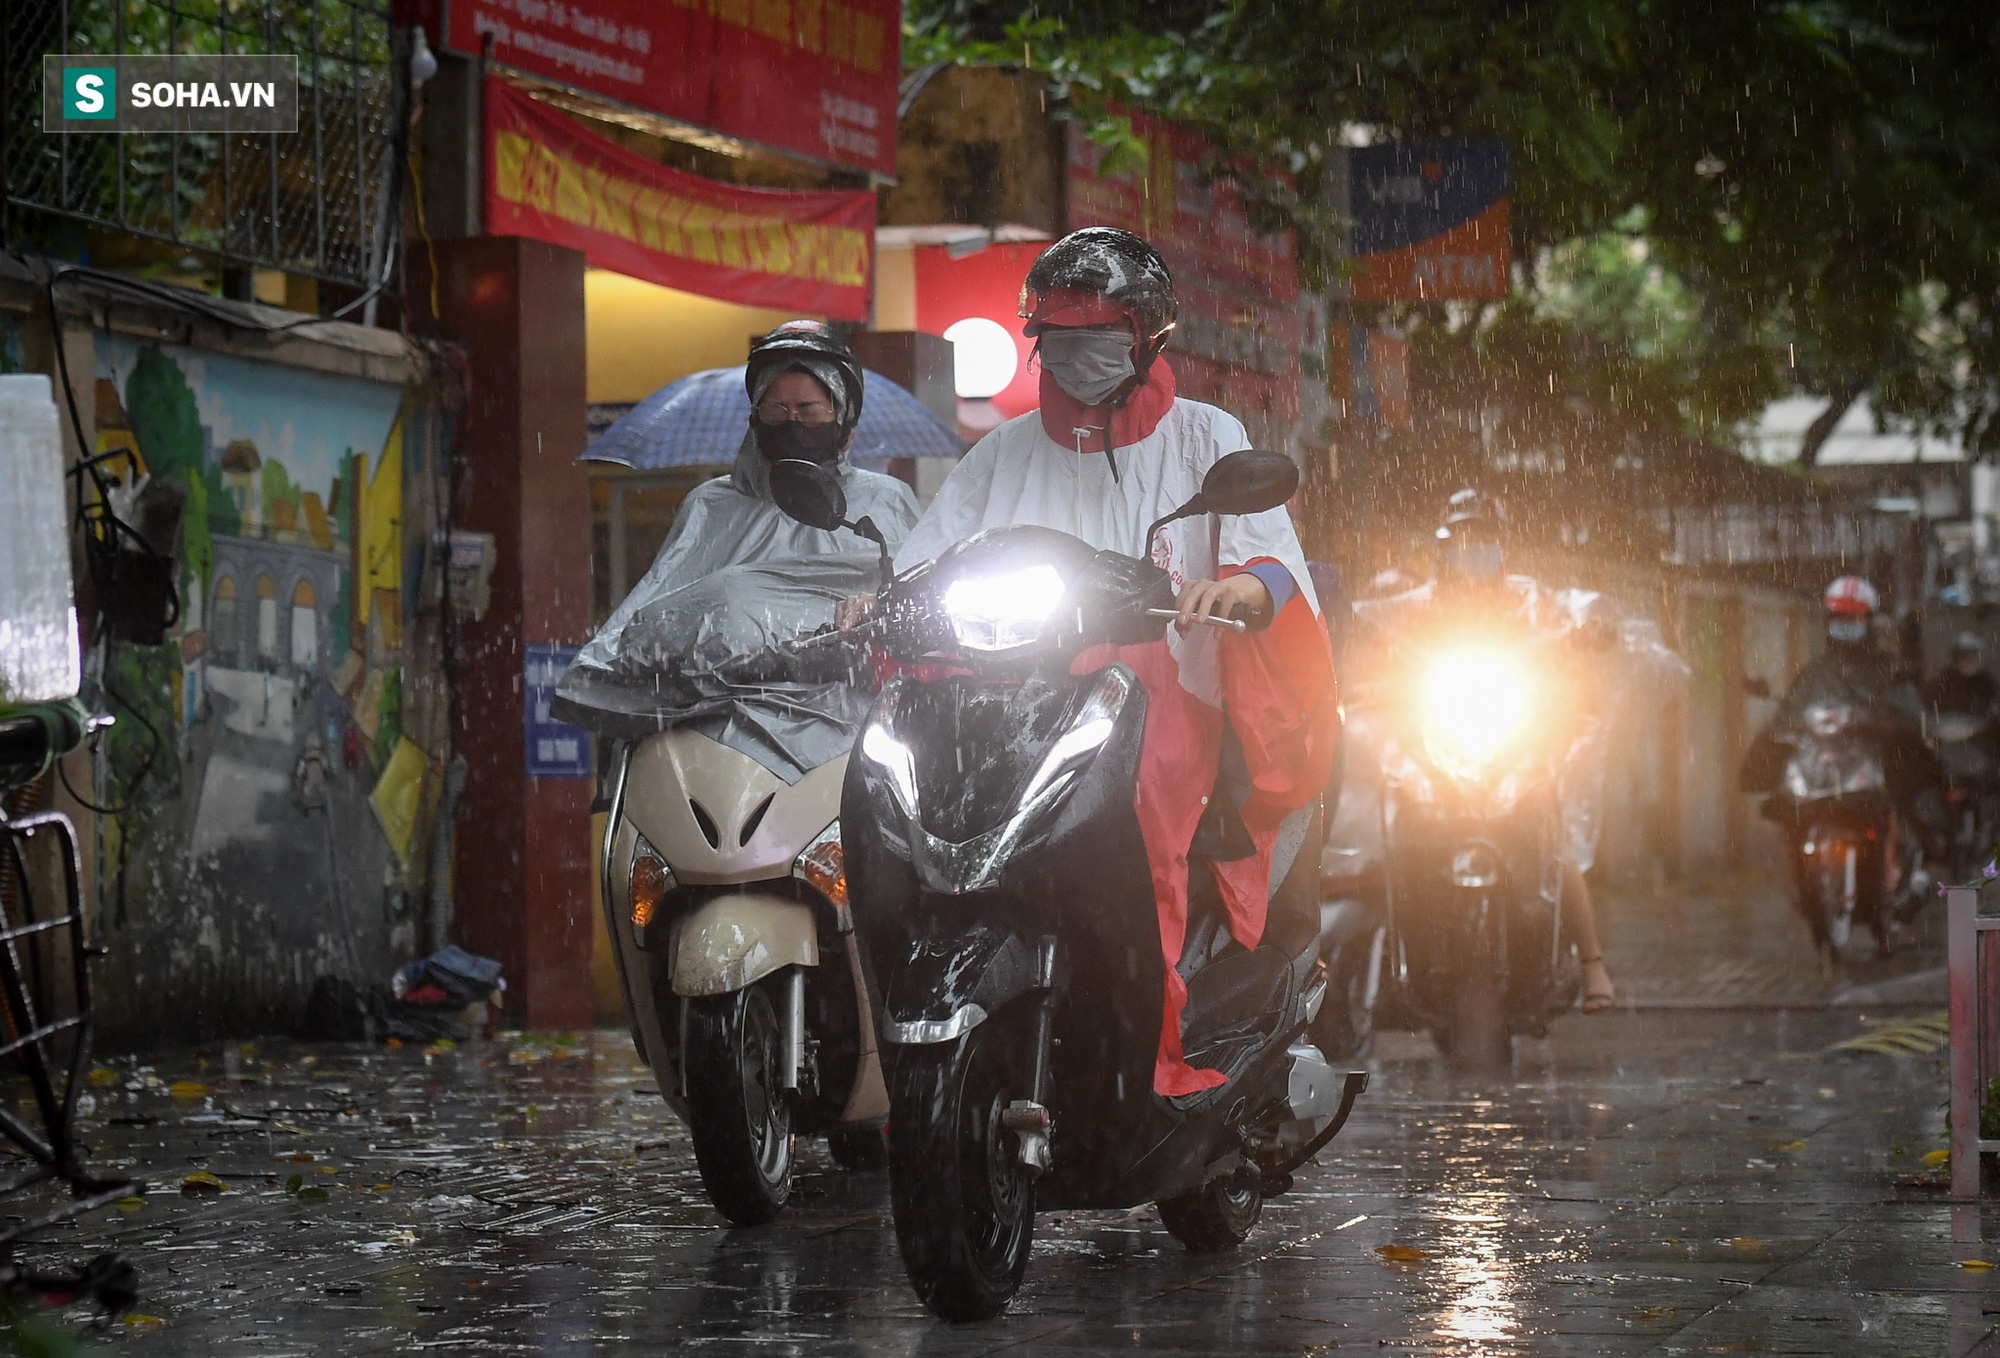 Đường phố Hà Nội tắc cứng trong mưa sáng đầu tuần, ô tô dàn hàng 6 chiếm hết lòng đường - Ảnh 4.